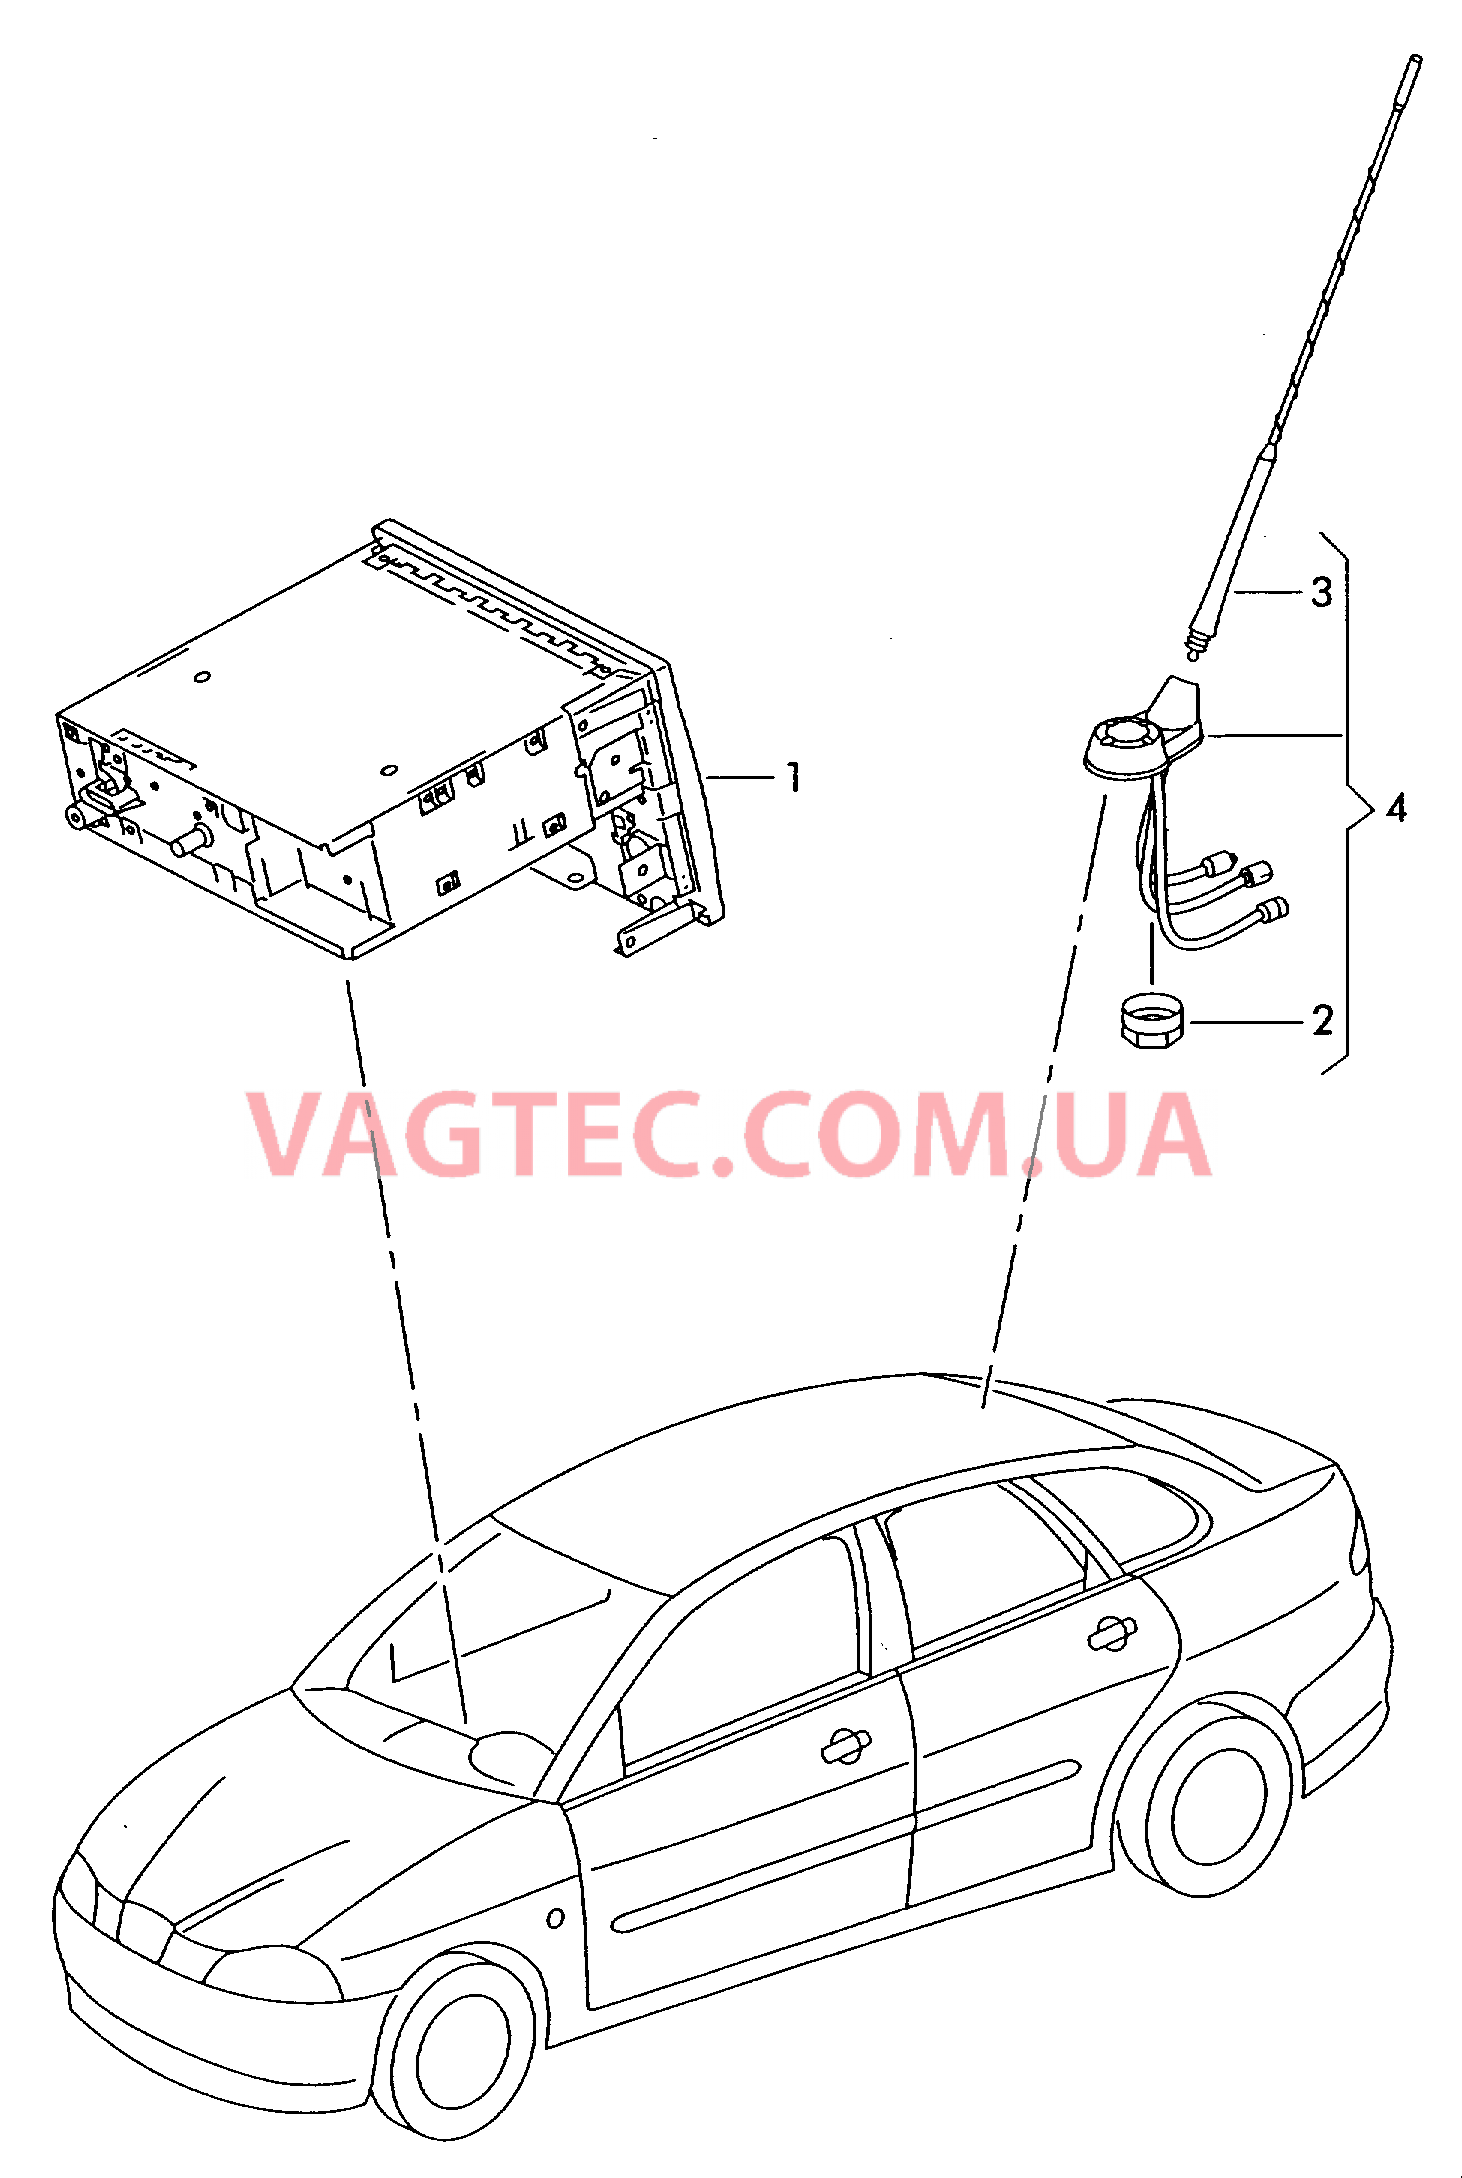 Электрические детали для системы навигации  для SEAT Ibiza 2002-1